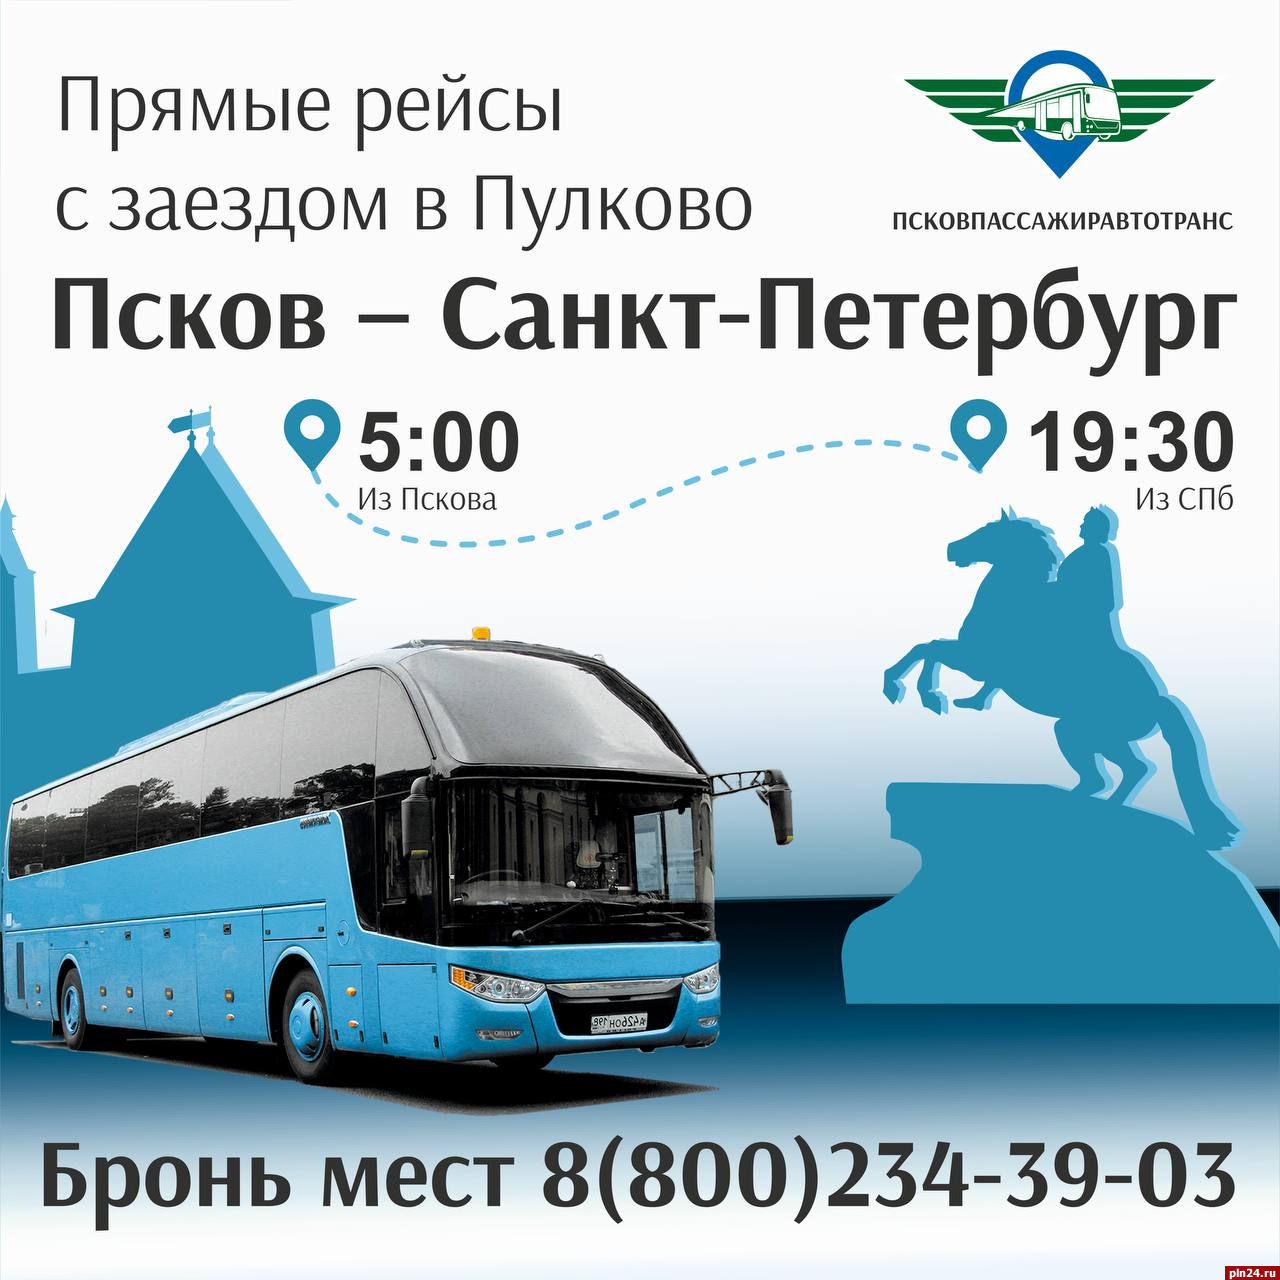 Новый автобусный маршрут из Пскова до Петербурга запустят с 12 апреля